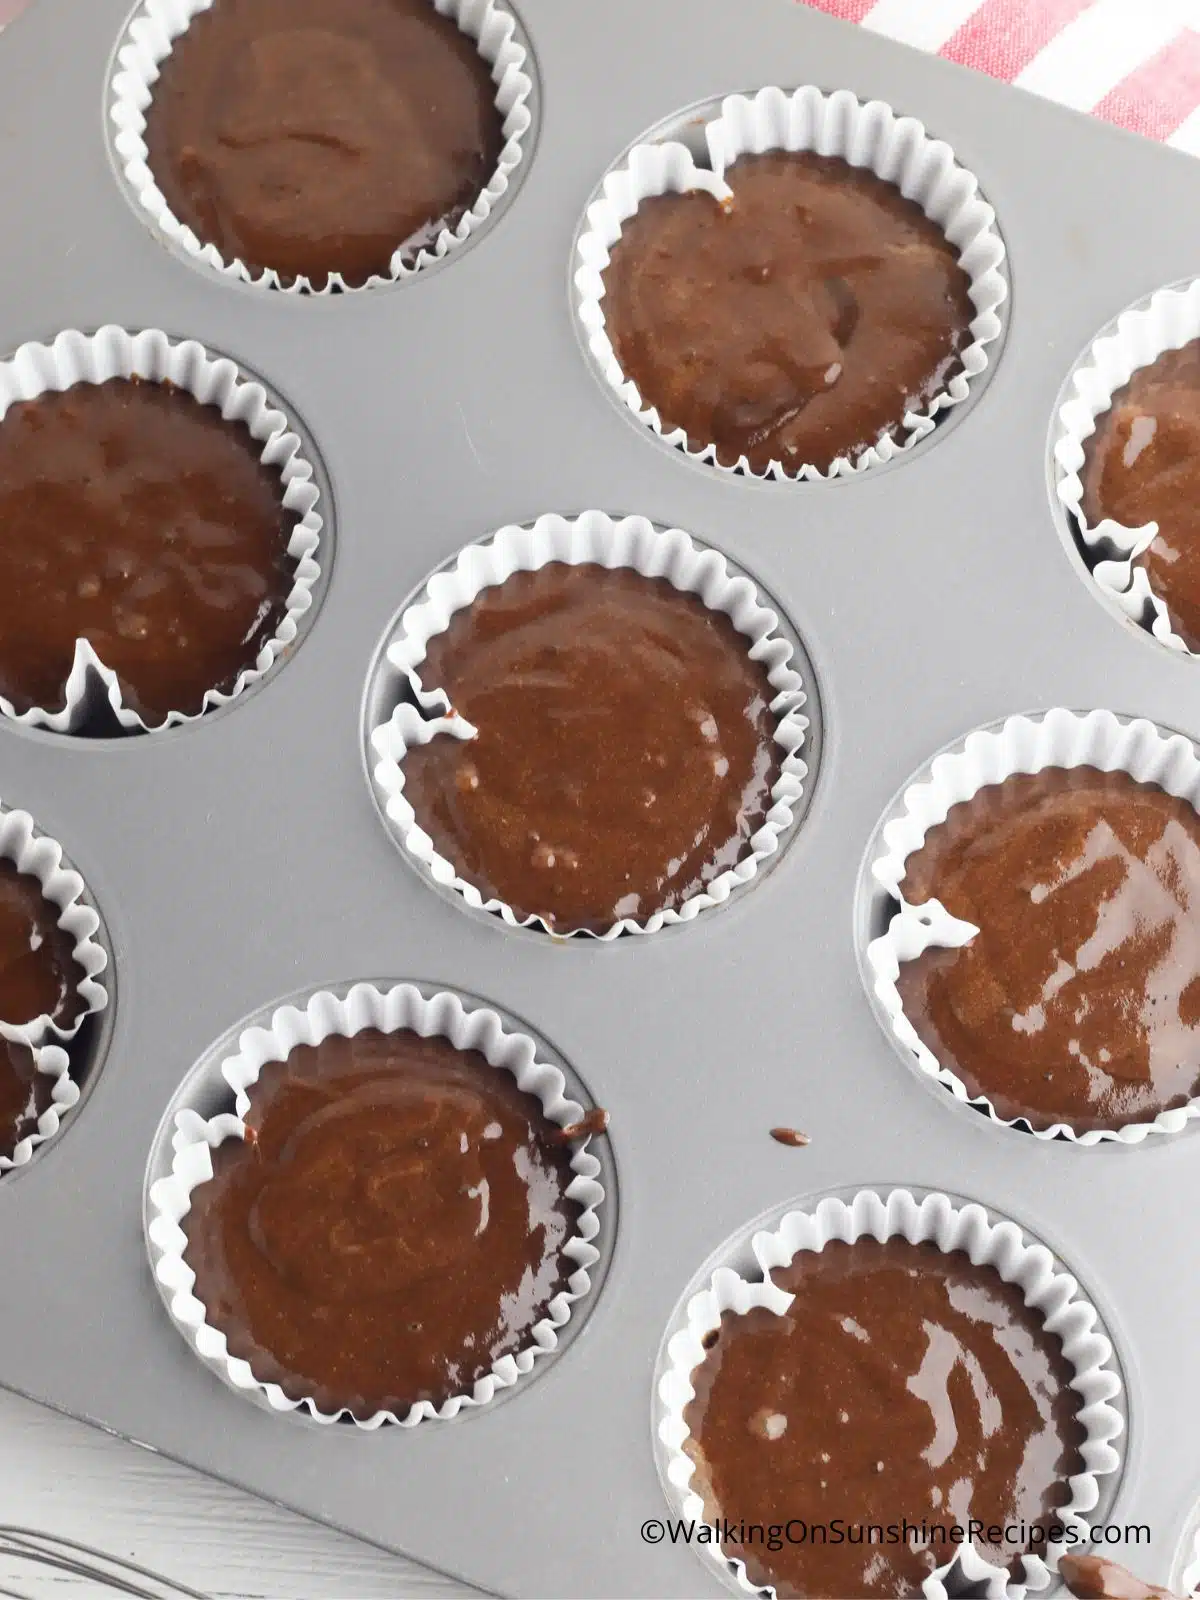 Chocolate cupcake batter in baking tin.